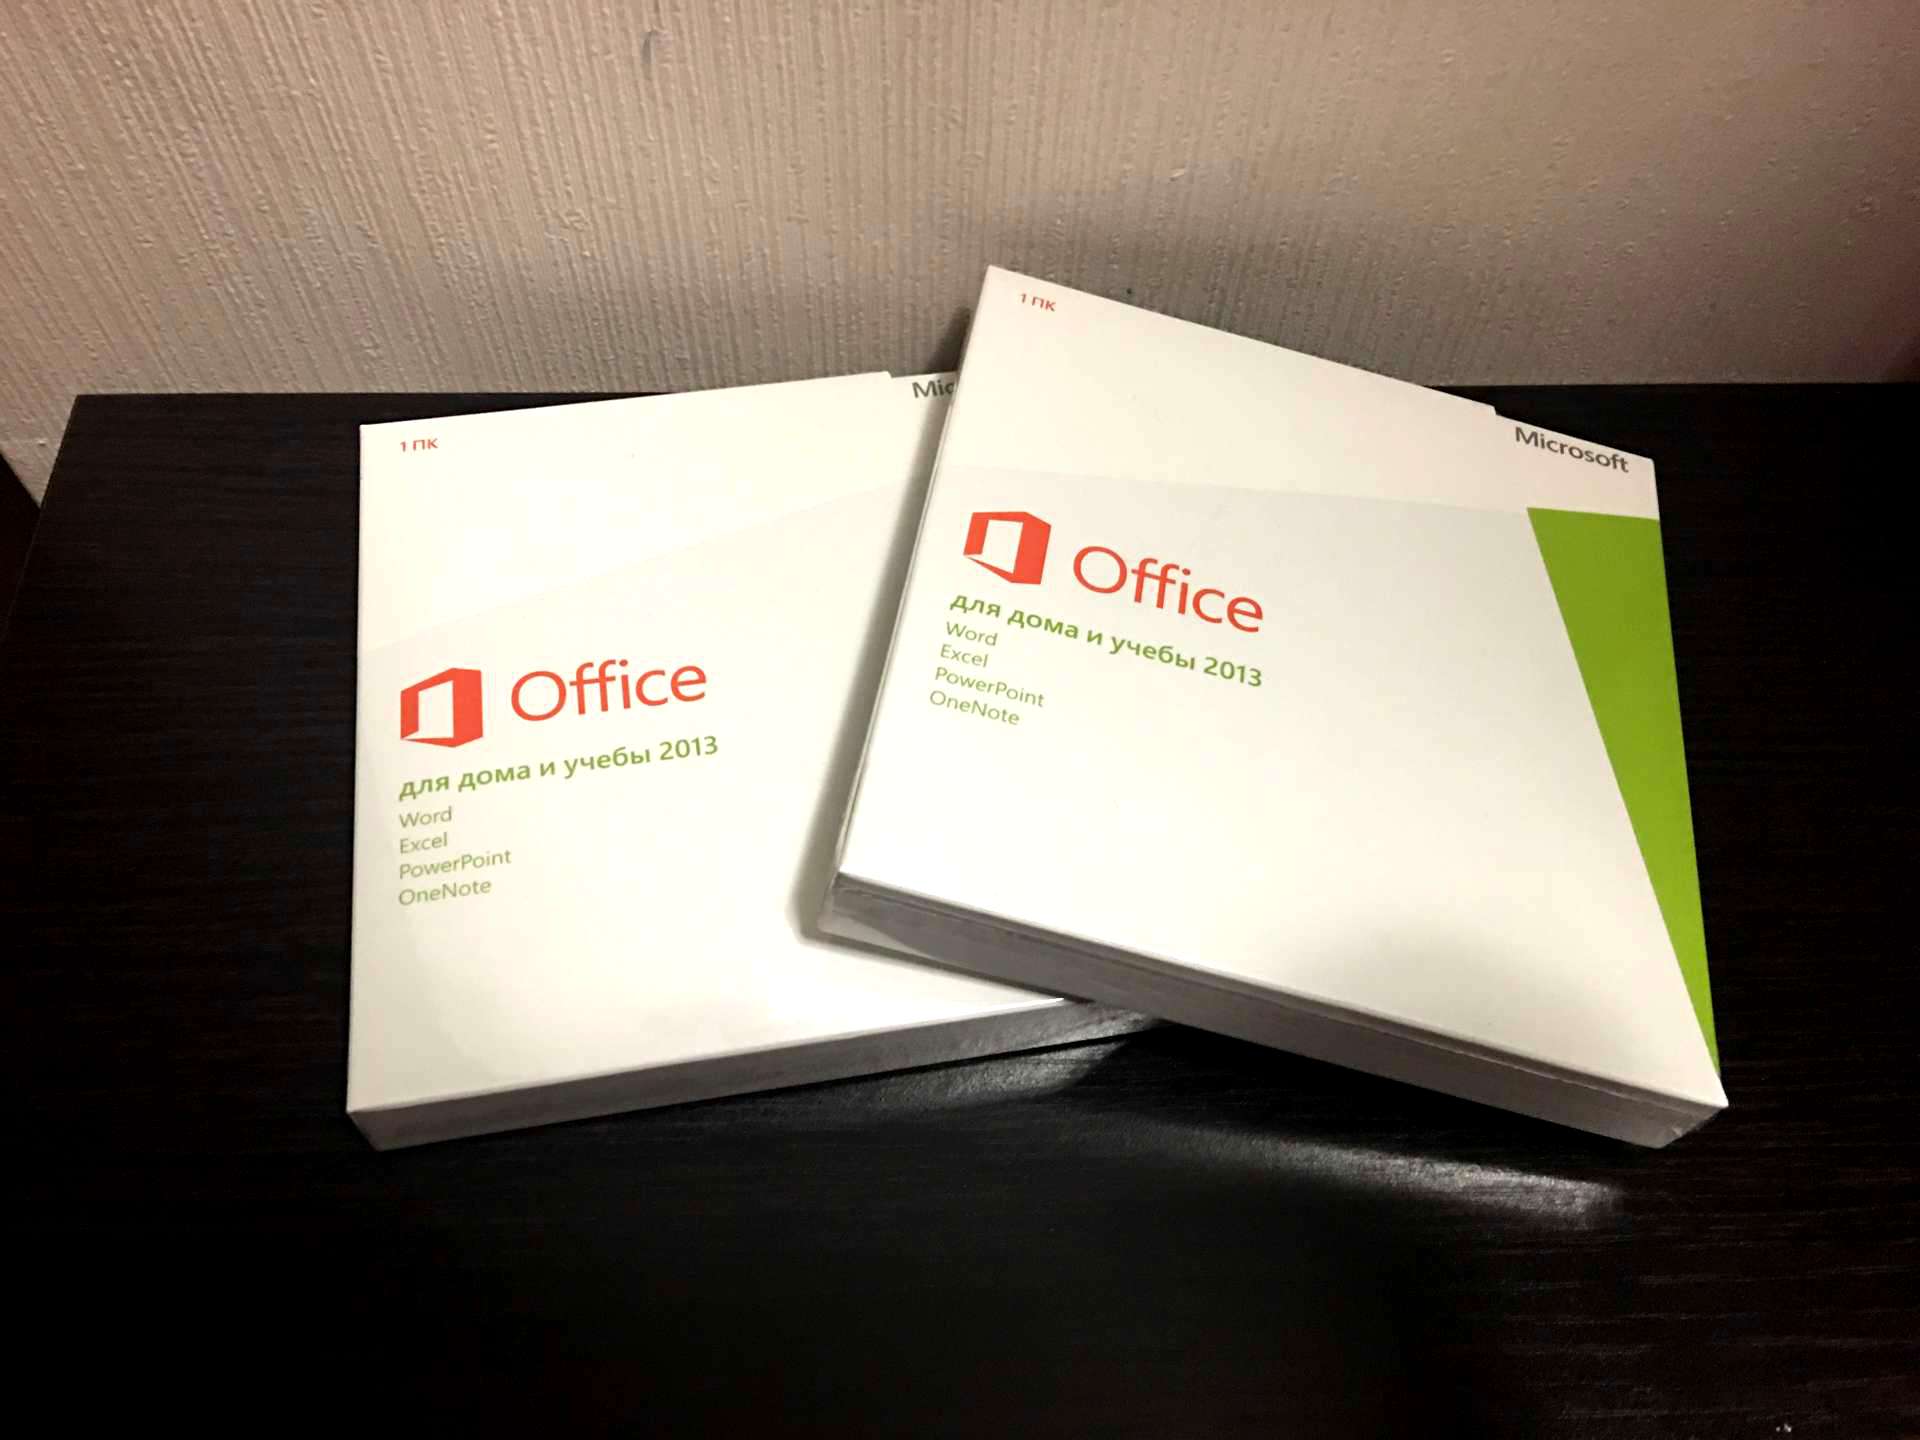 Ключи для office для дома. Office для дома и учебы. Office для учебы. Microsoft Office 2013 для дома и учебы. Офис для дома и учебы 21.